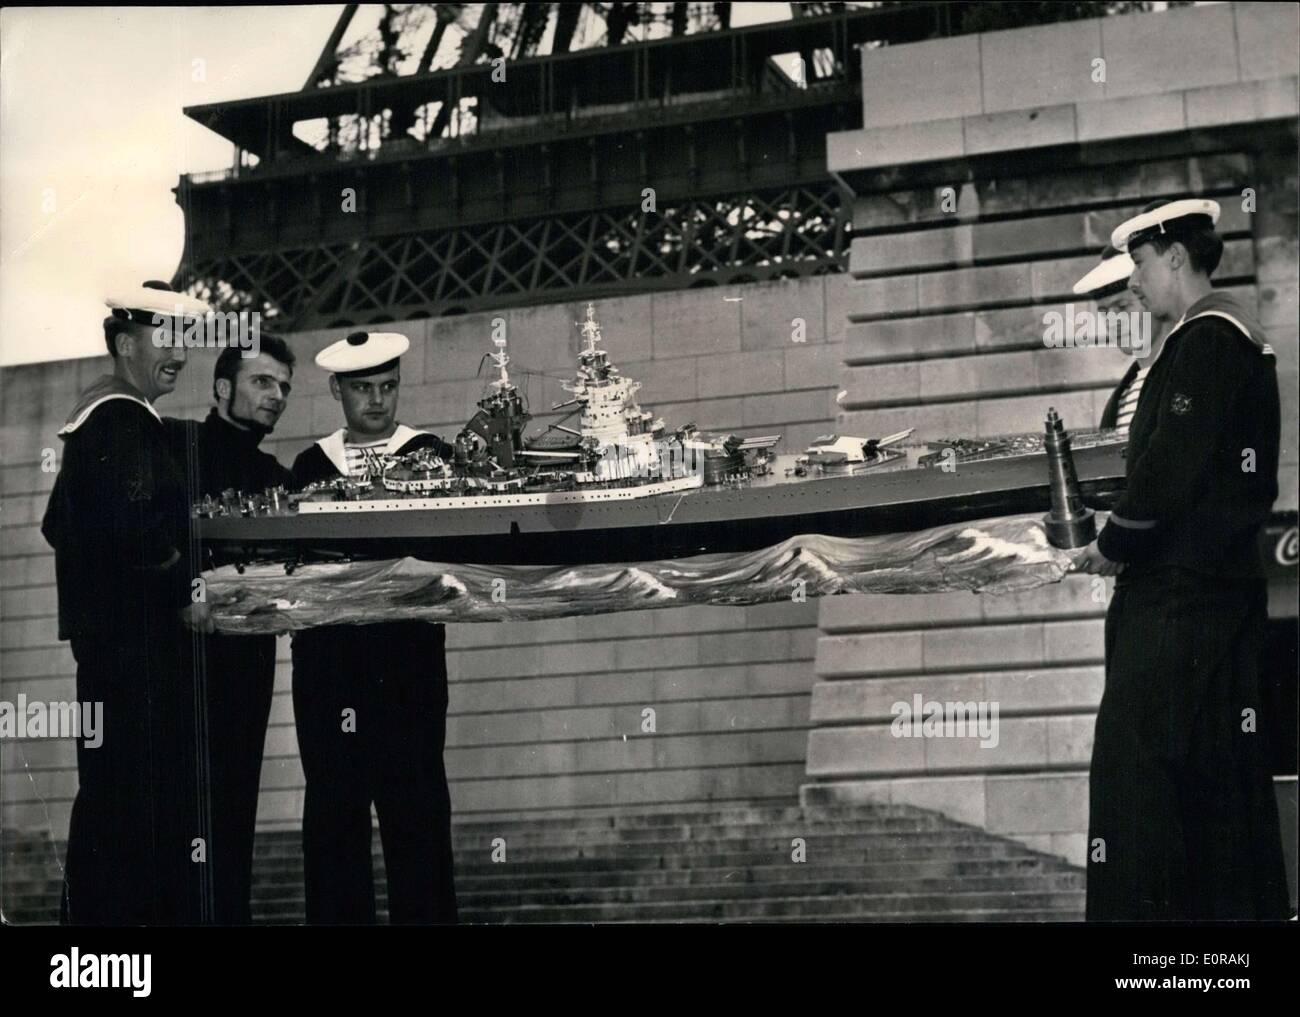 Septiembre 24, 1958 - La Feria Náutica abre a orillas del Sena entre el  Pont de l'Alma y el Pont d'Iena (puentes). Una obra maestra de tiempo y  paciencia: el modelo del